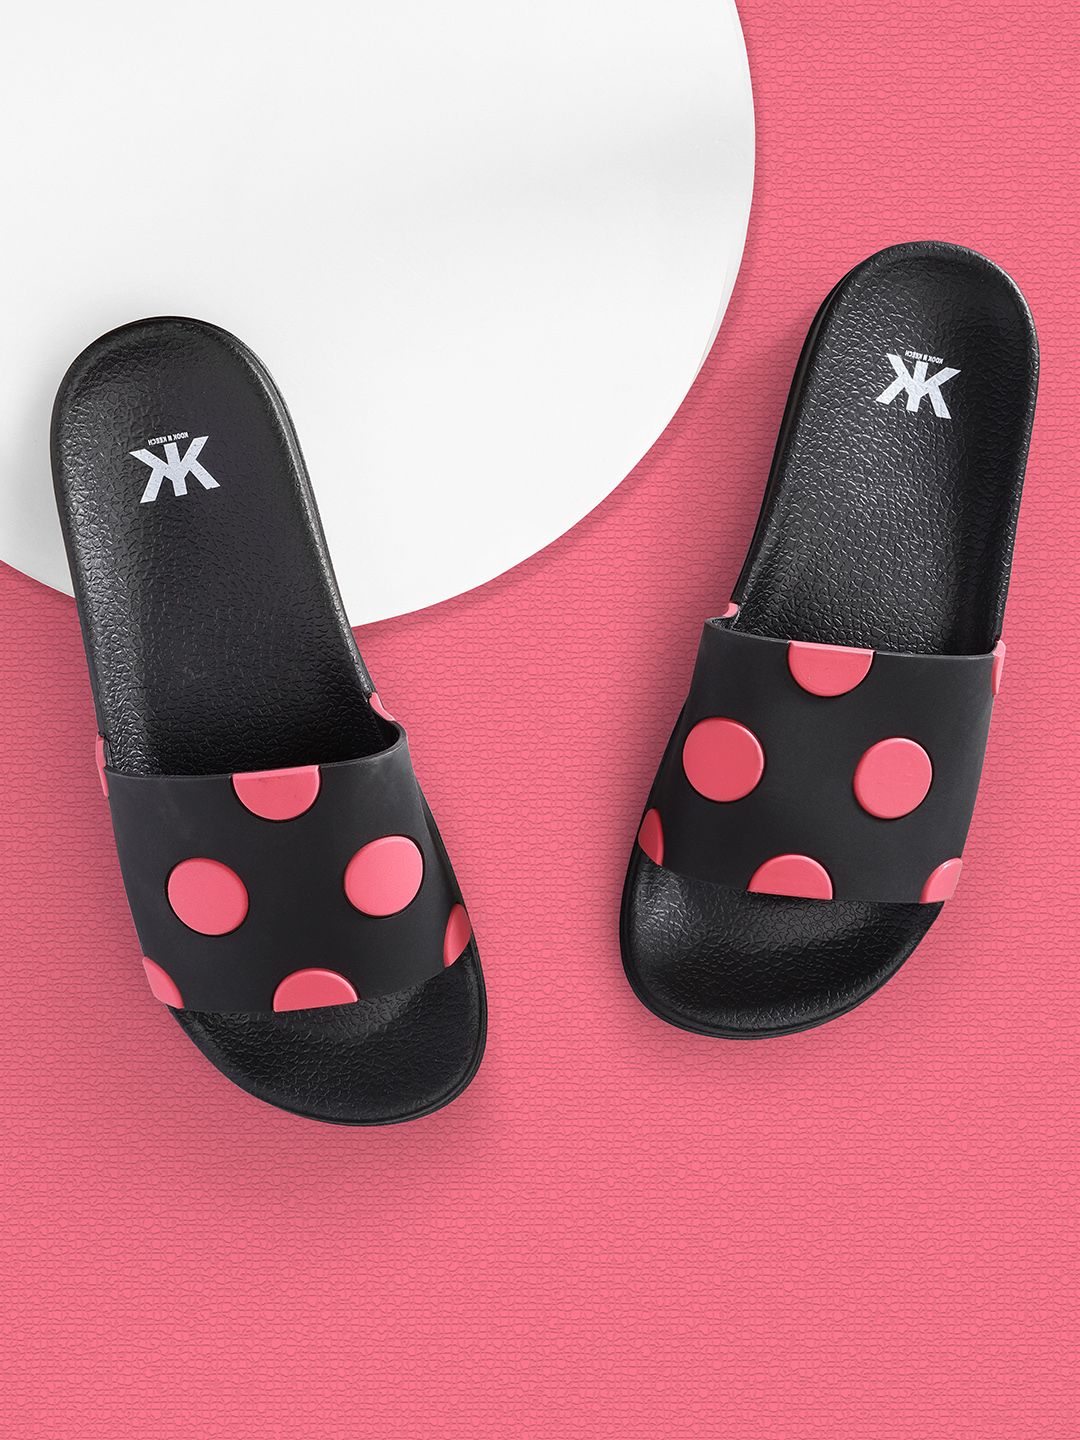 Kook N Keech Women Black & Pink Polka Dot Embossed Sliders Price in India